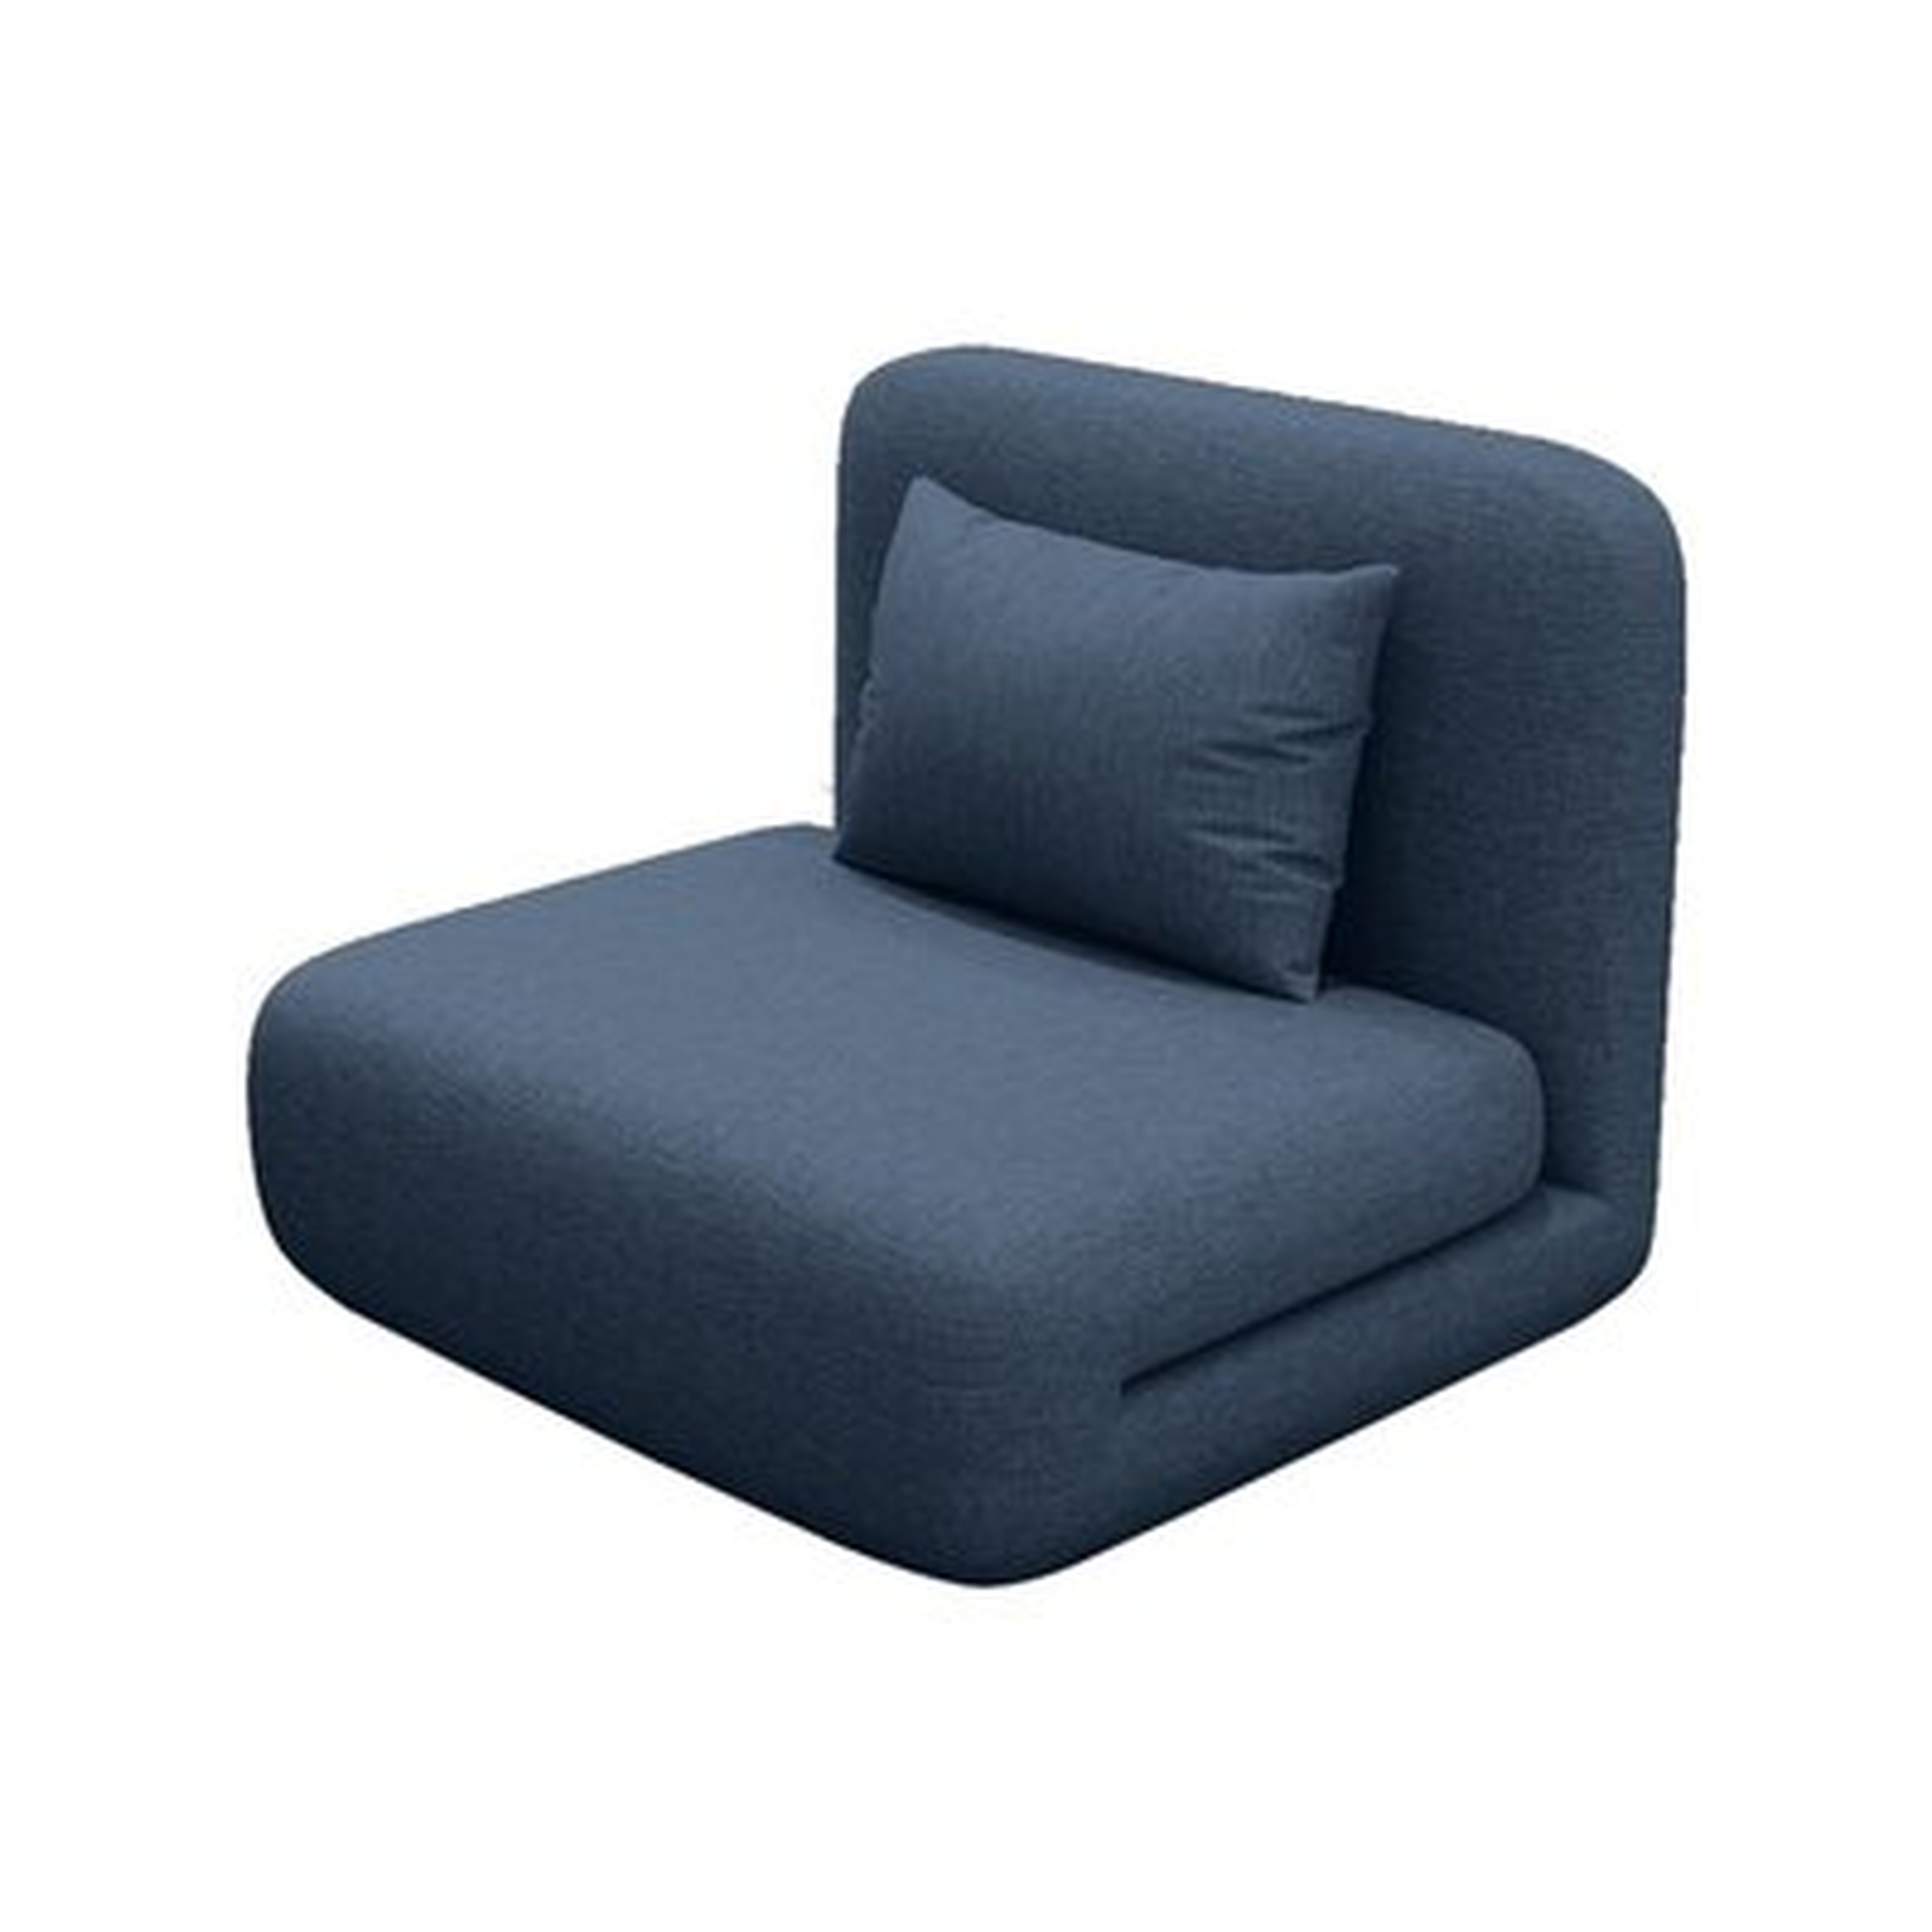 Aarley-Ray 31.5" Wide Armless Sofa Bed - Wayfair